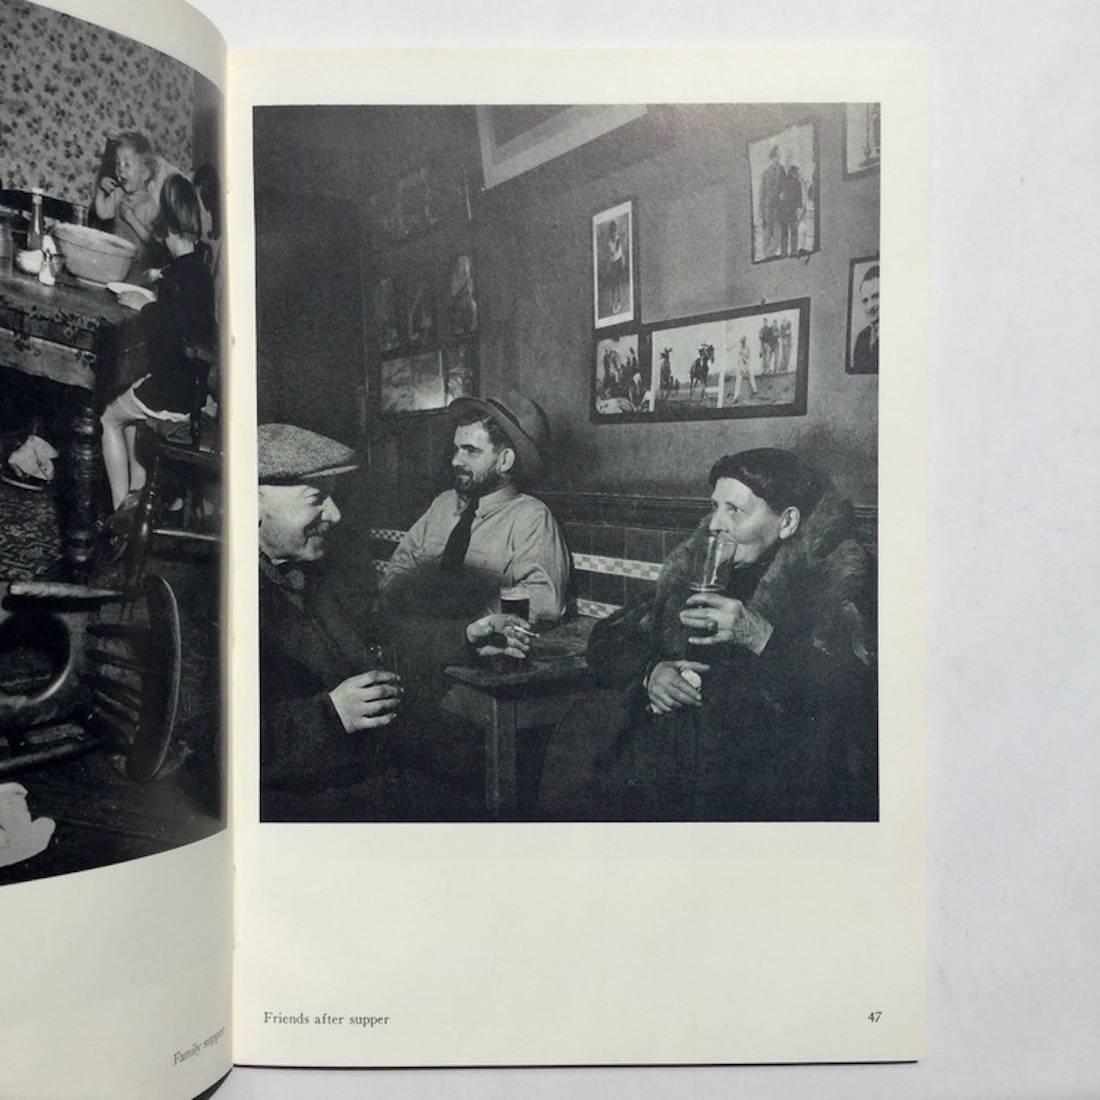 Première édition, première impression, The Focal Press, 1948.

Une magnifique publication de l'œuvre de Brandt dans la série recherchée de Focal Press. Les photographies de Brandt montrent un Londres qui a disparu depuis longtemps, une grande partie